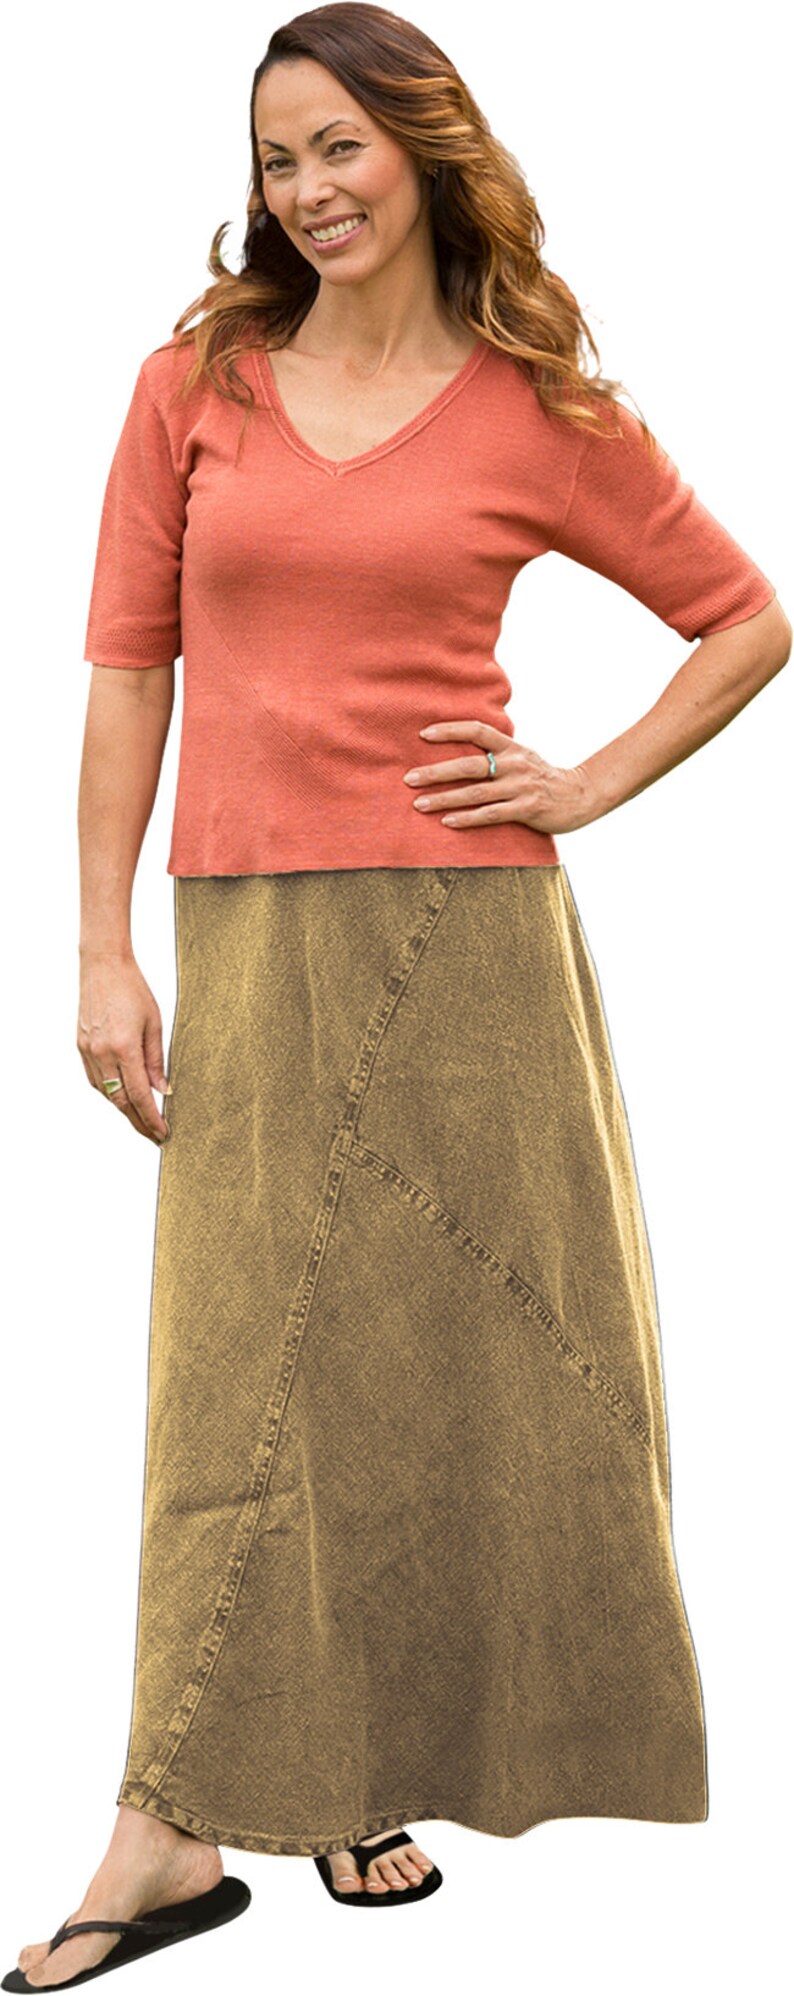 Dash Hemp Mishka Skirt image 5